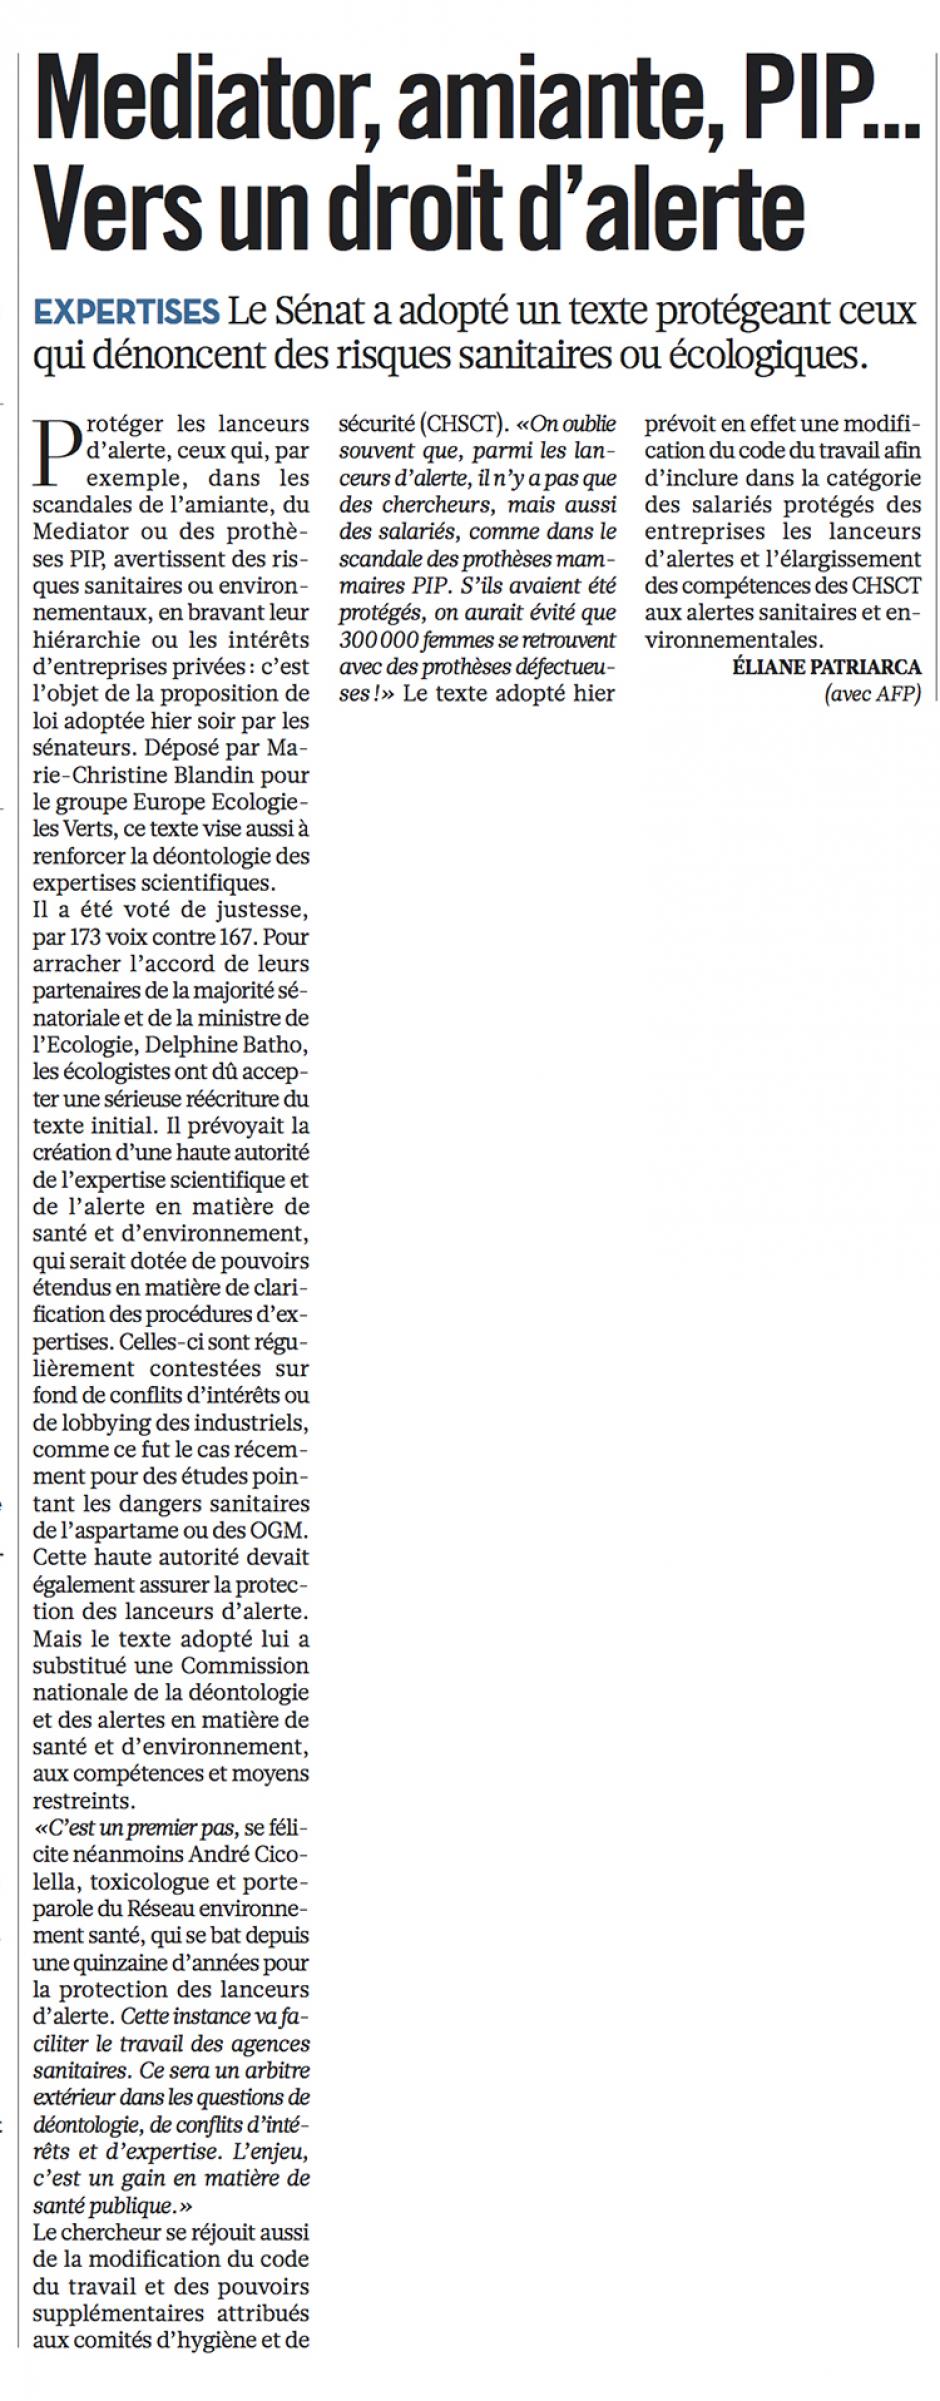 20121122-Libération-Mediator, amiante, PIP… Vers un droit d'alerte